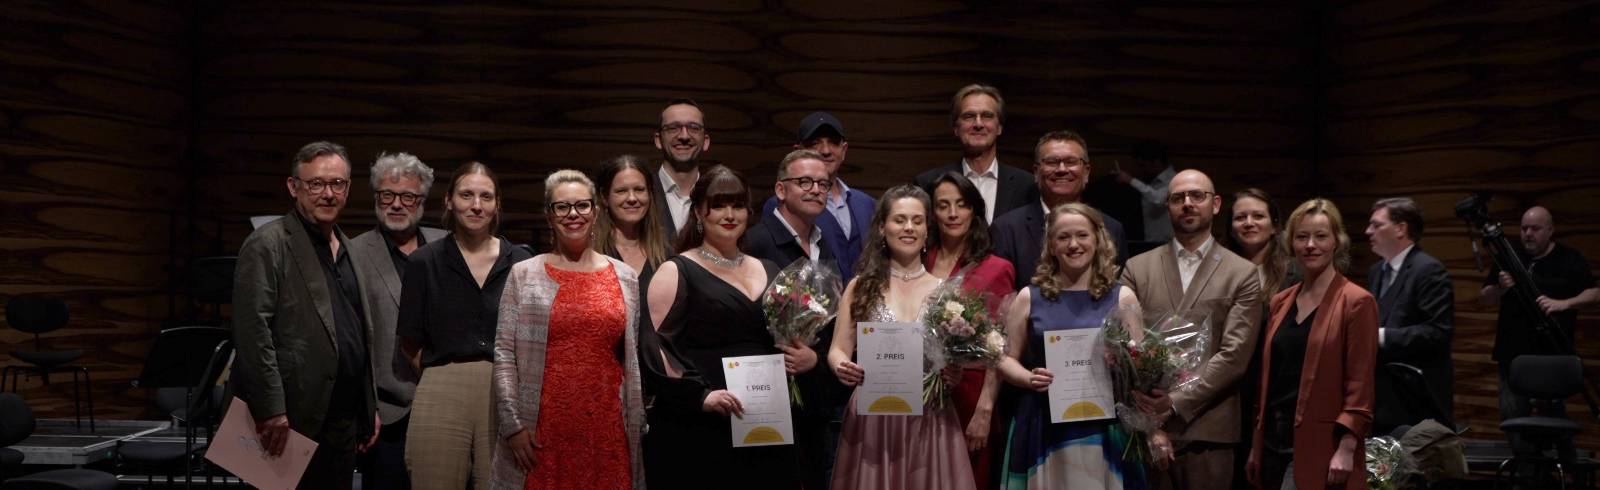 Strauß-Jahr 2025: Siegerinnen des Gesangswettbewerbes gekürt